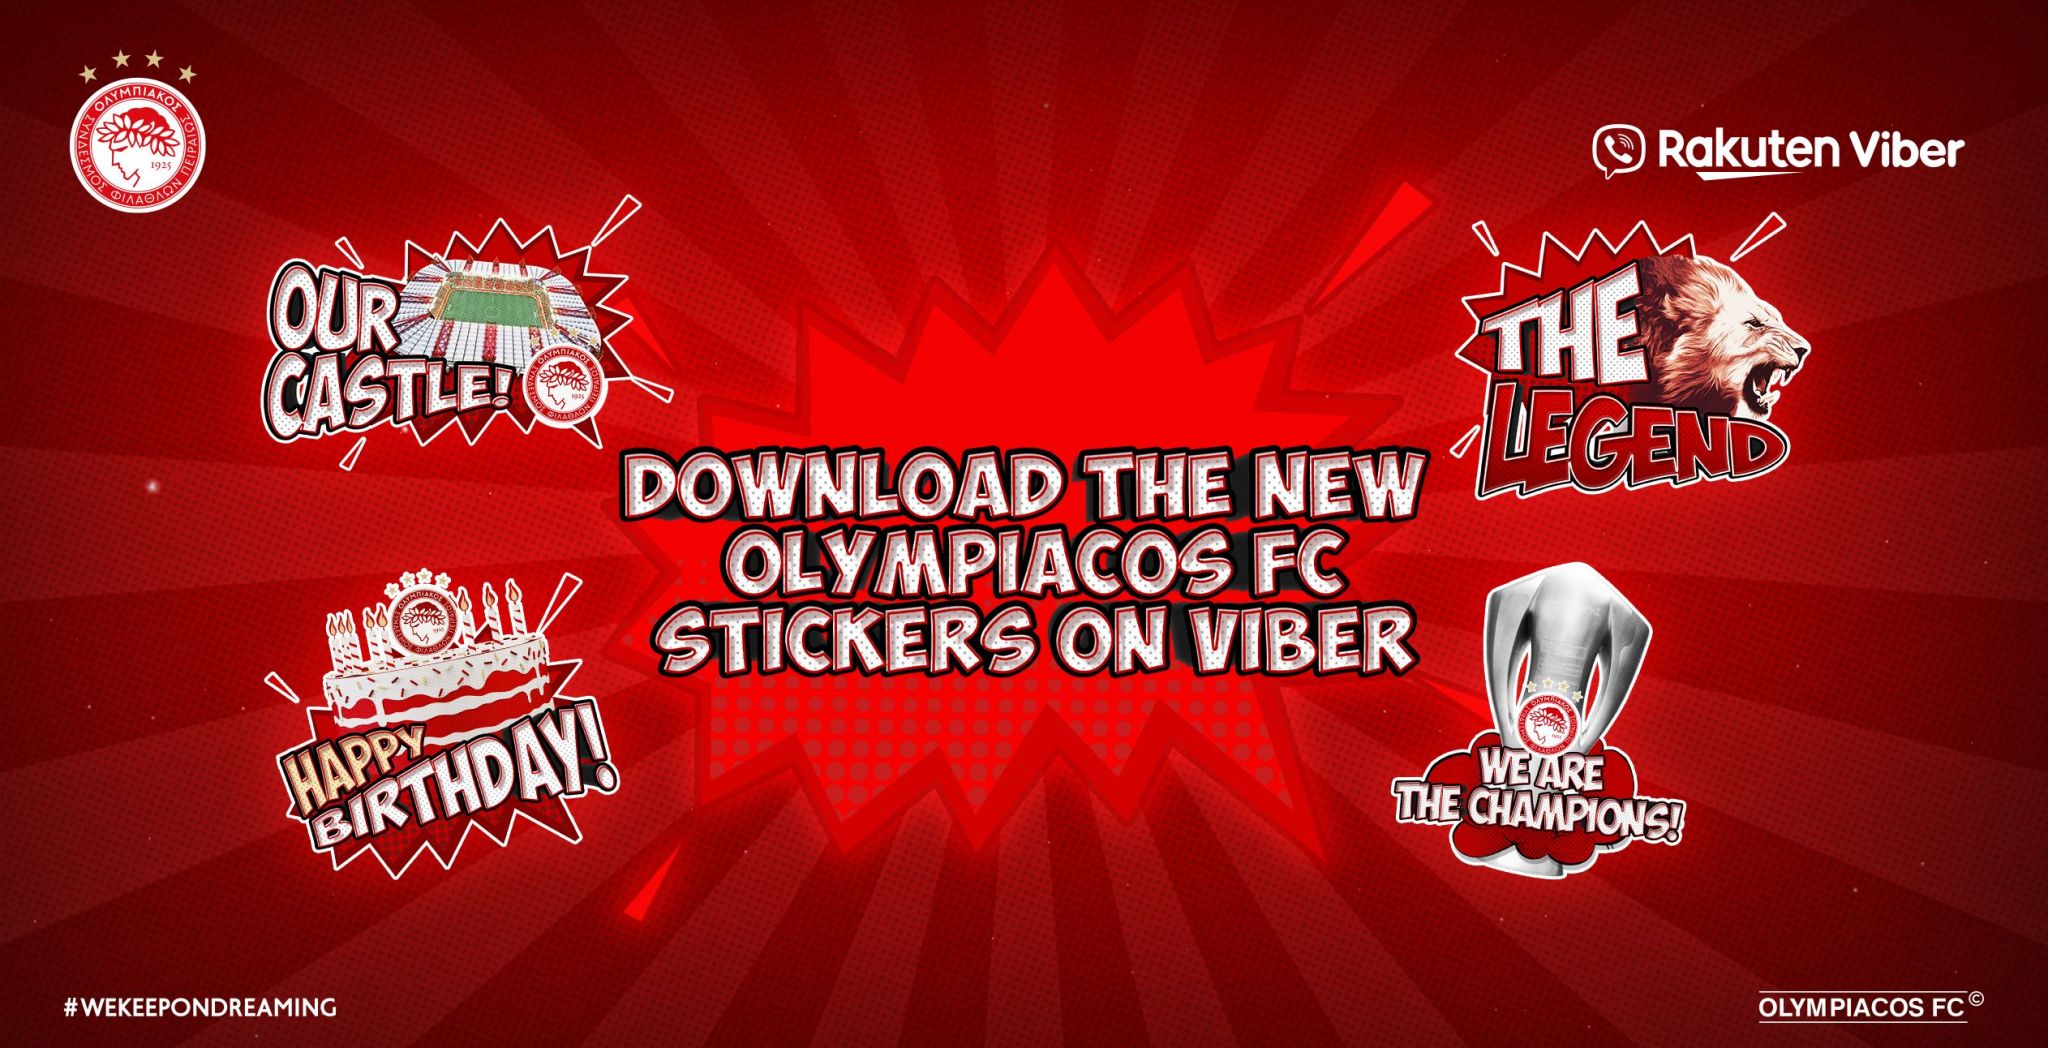 Les nouveaux stickers de l’Olympiacos FC sont arrivés sur Viber !